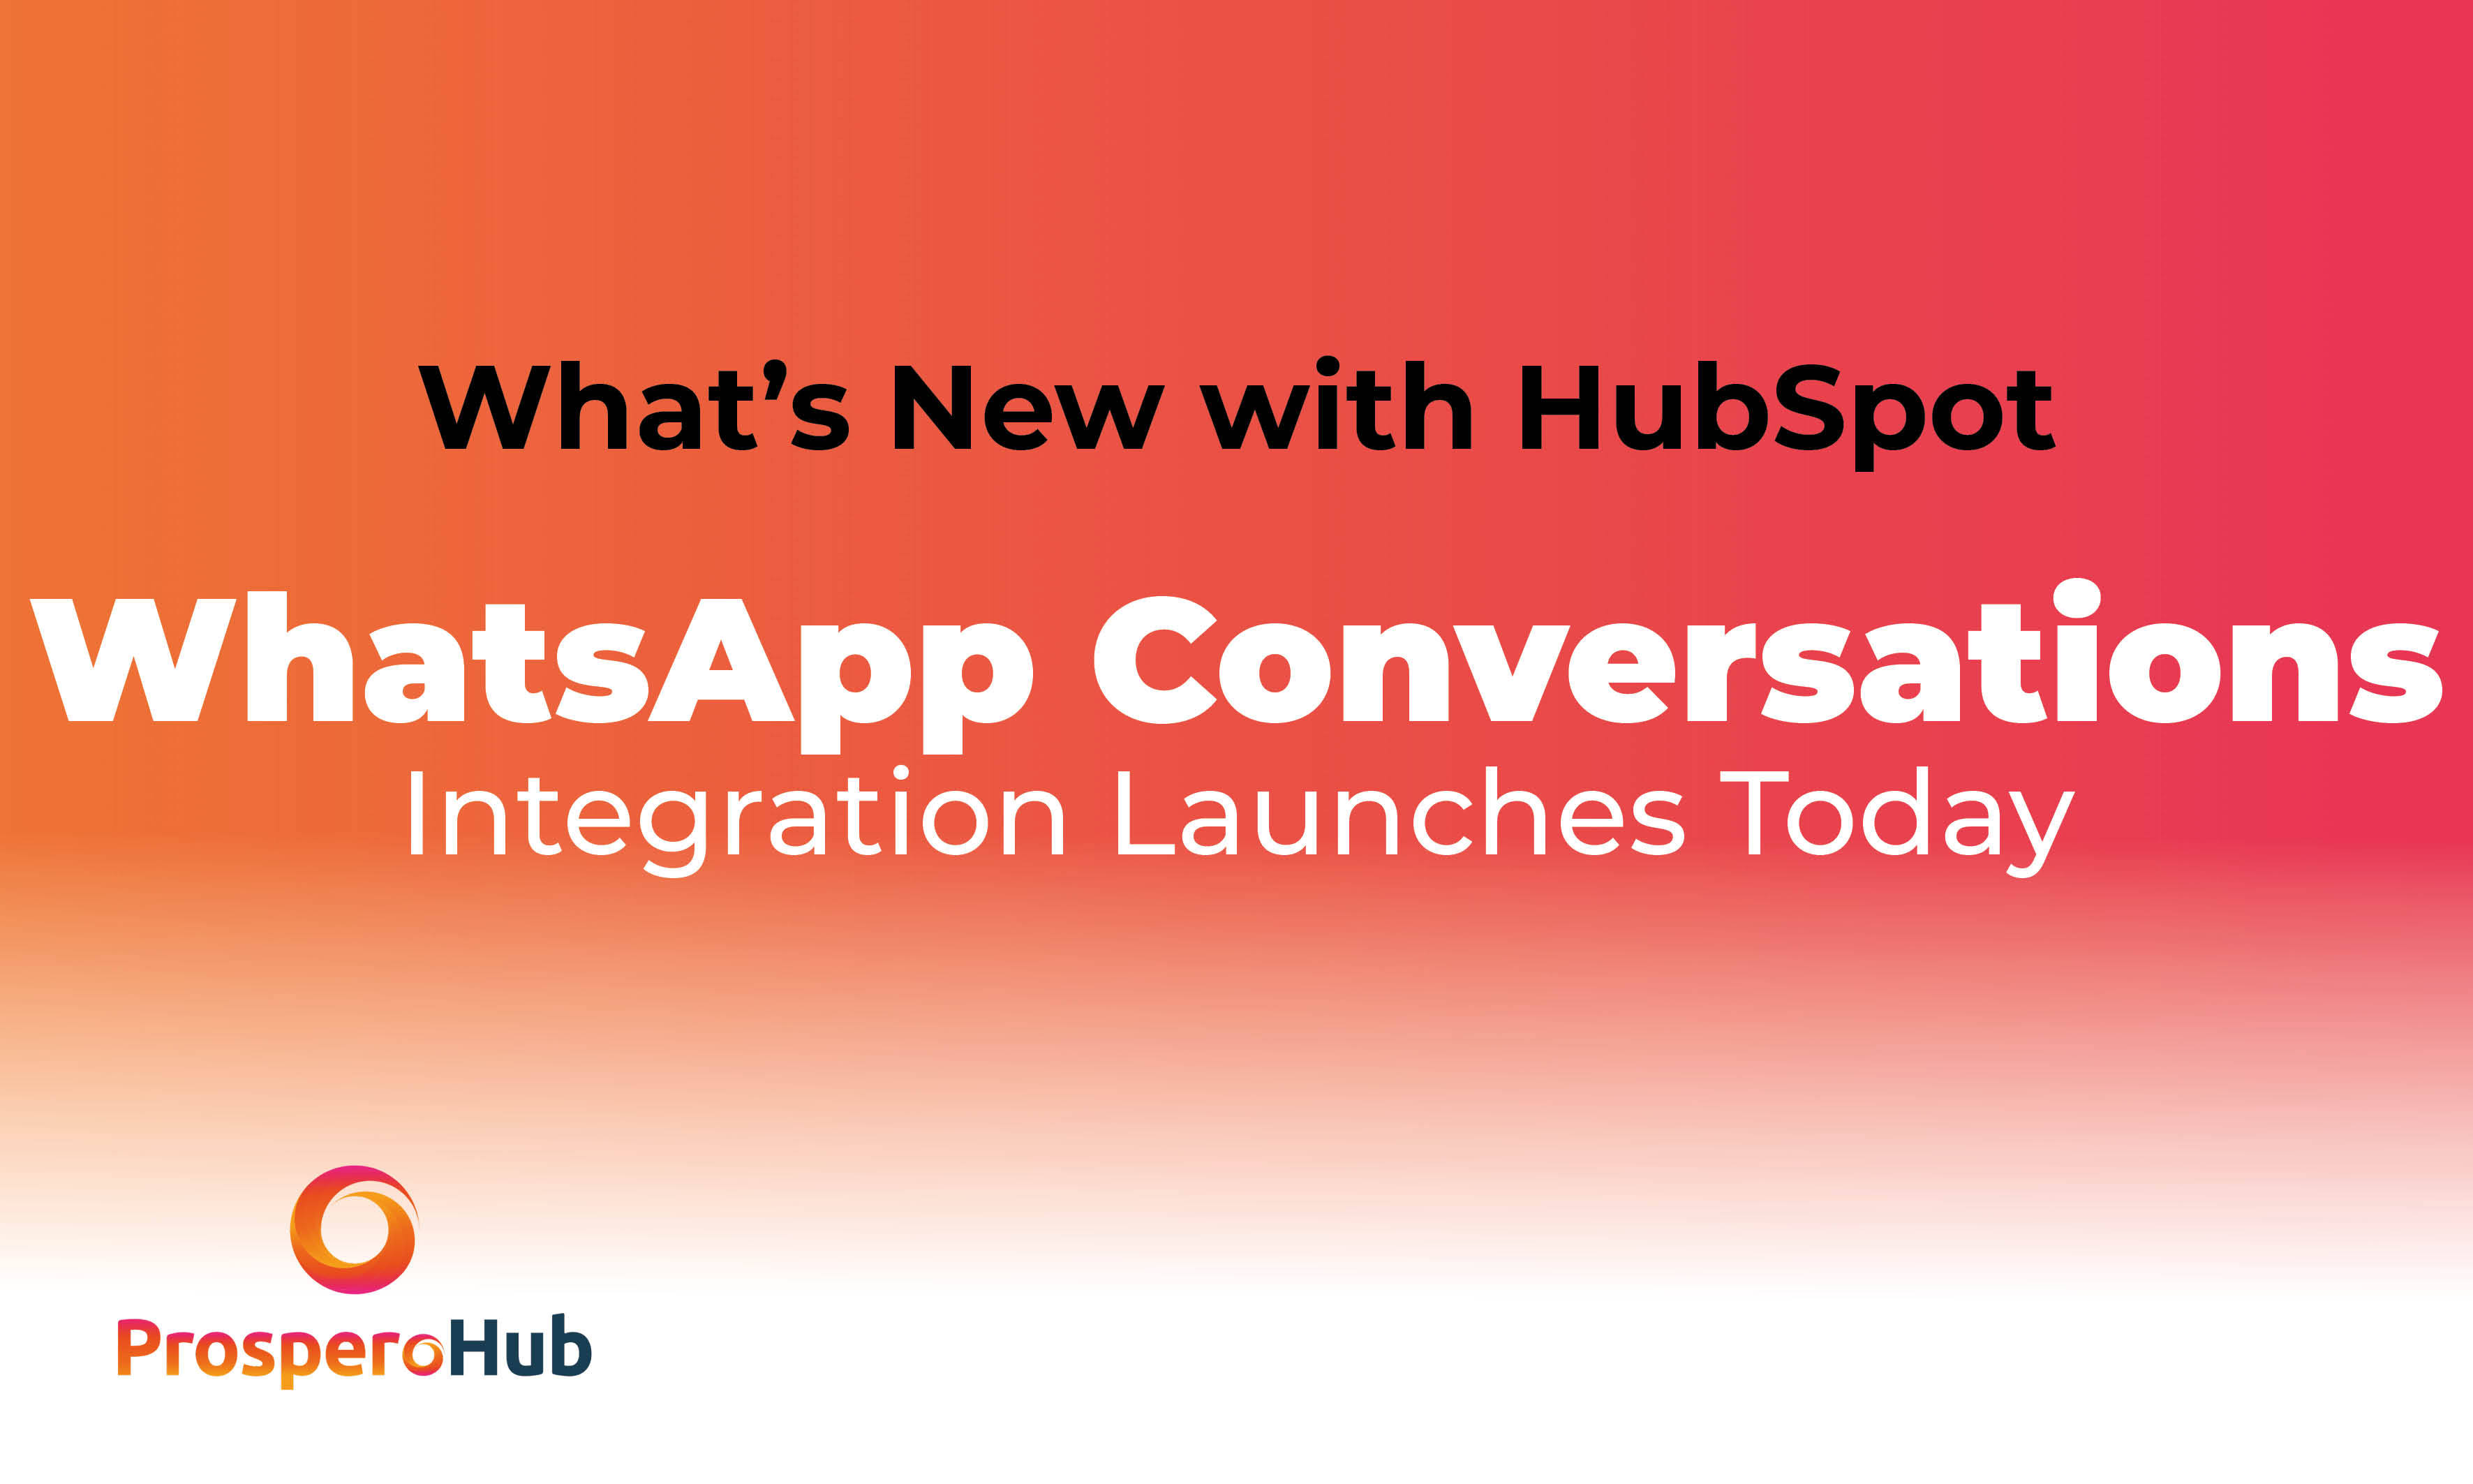 WhatsApp HubSpot Integration